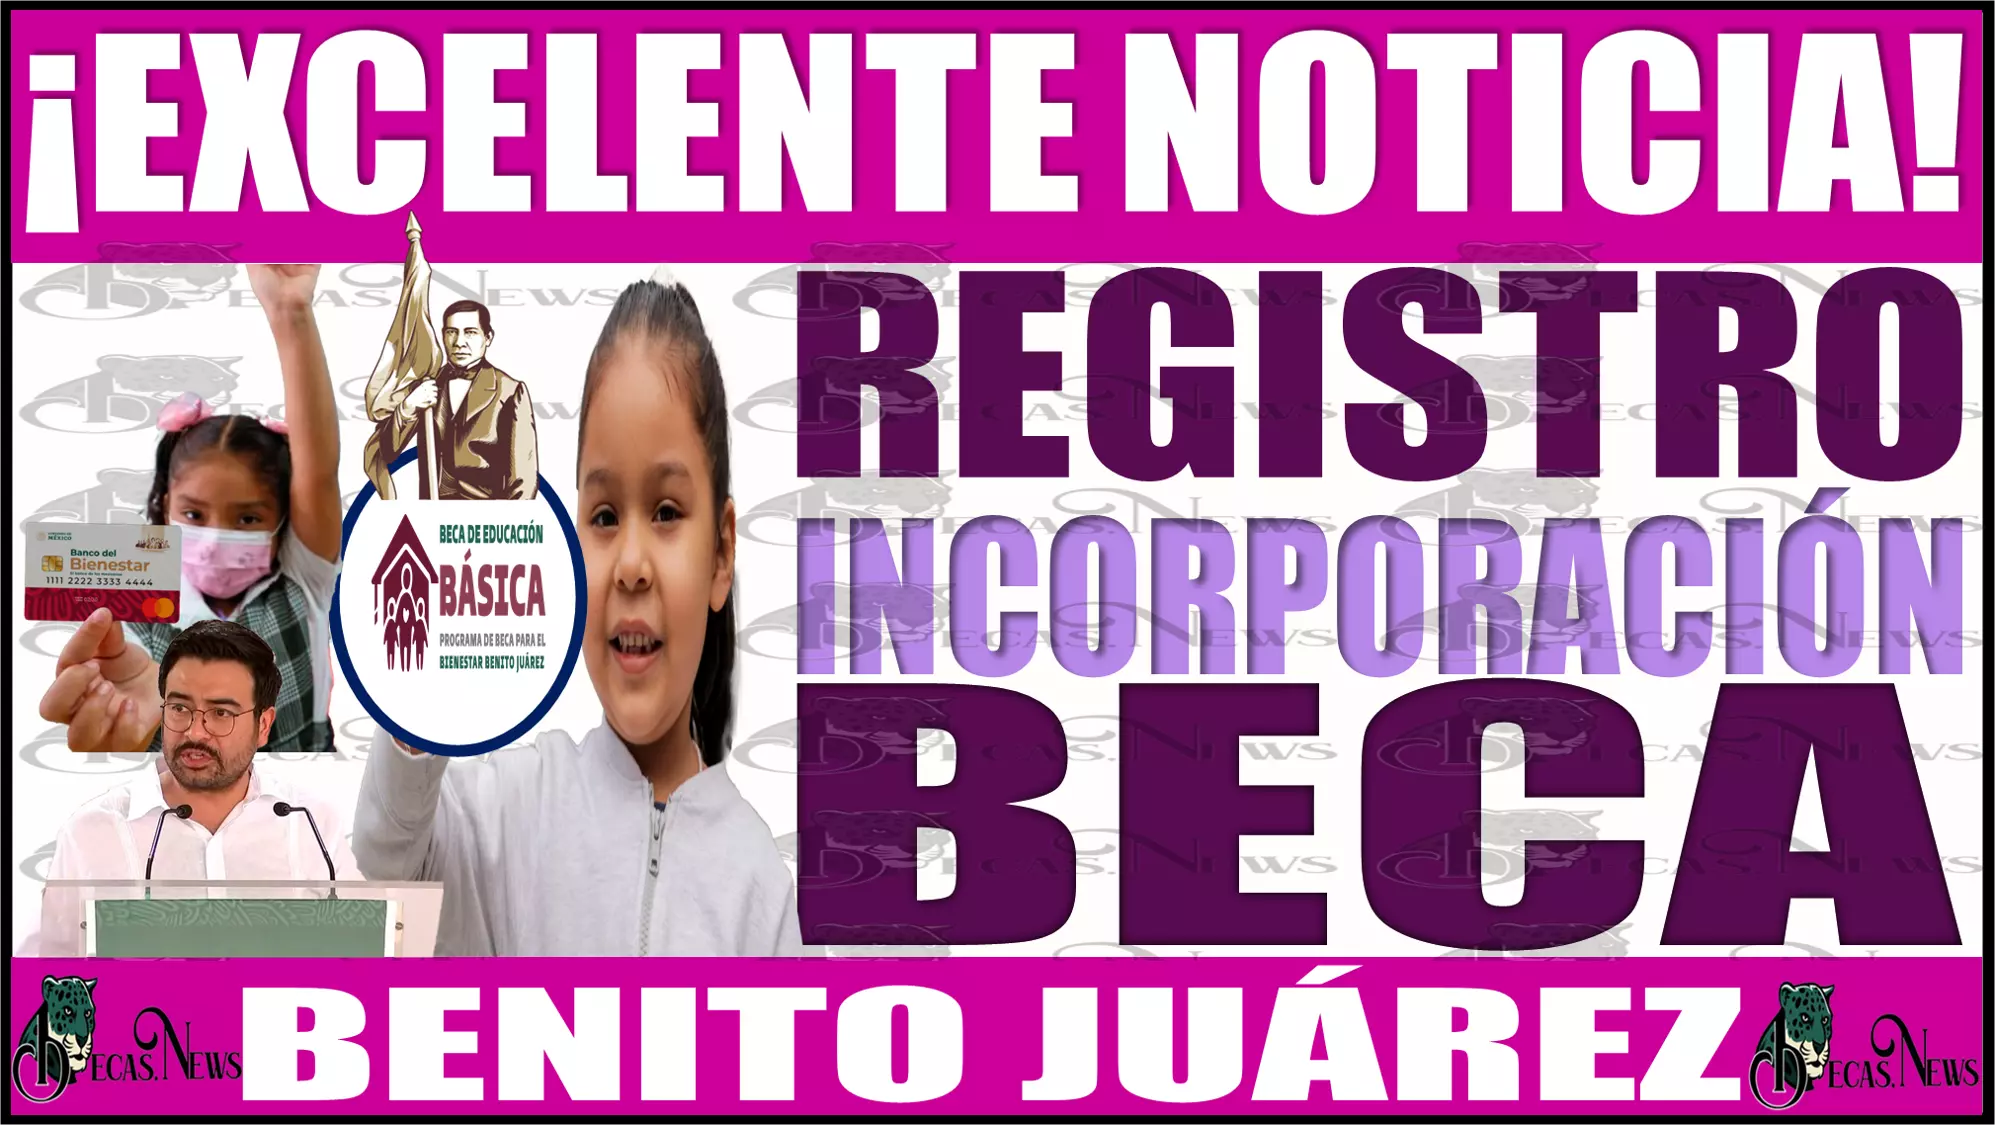 ¡Excelente noticia! Registro de incorporación a la BECA BENITO JUÁREZ 